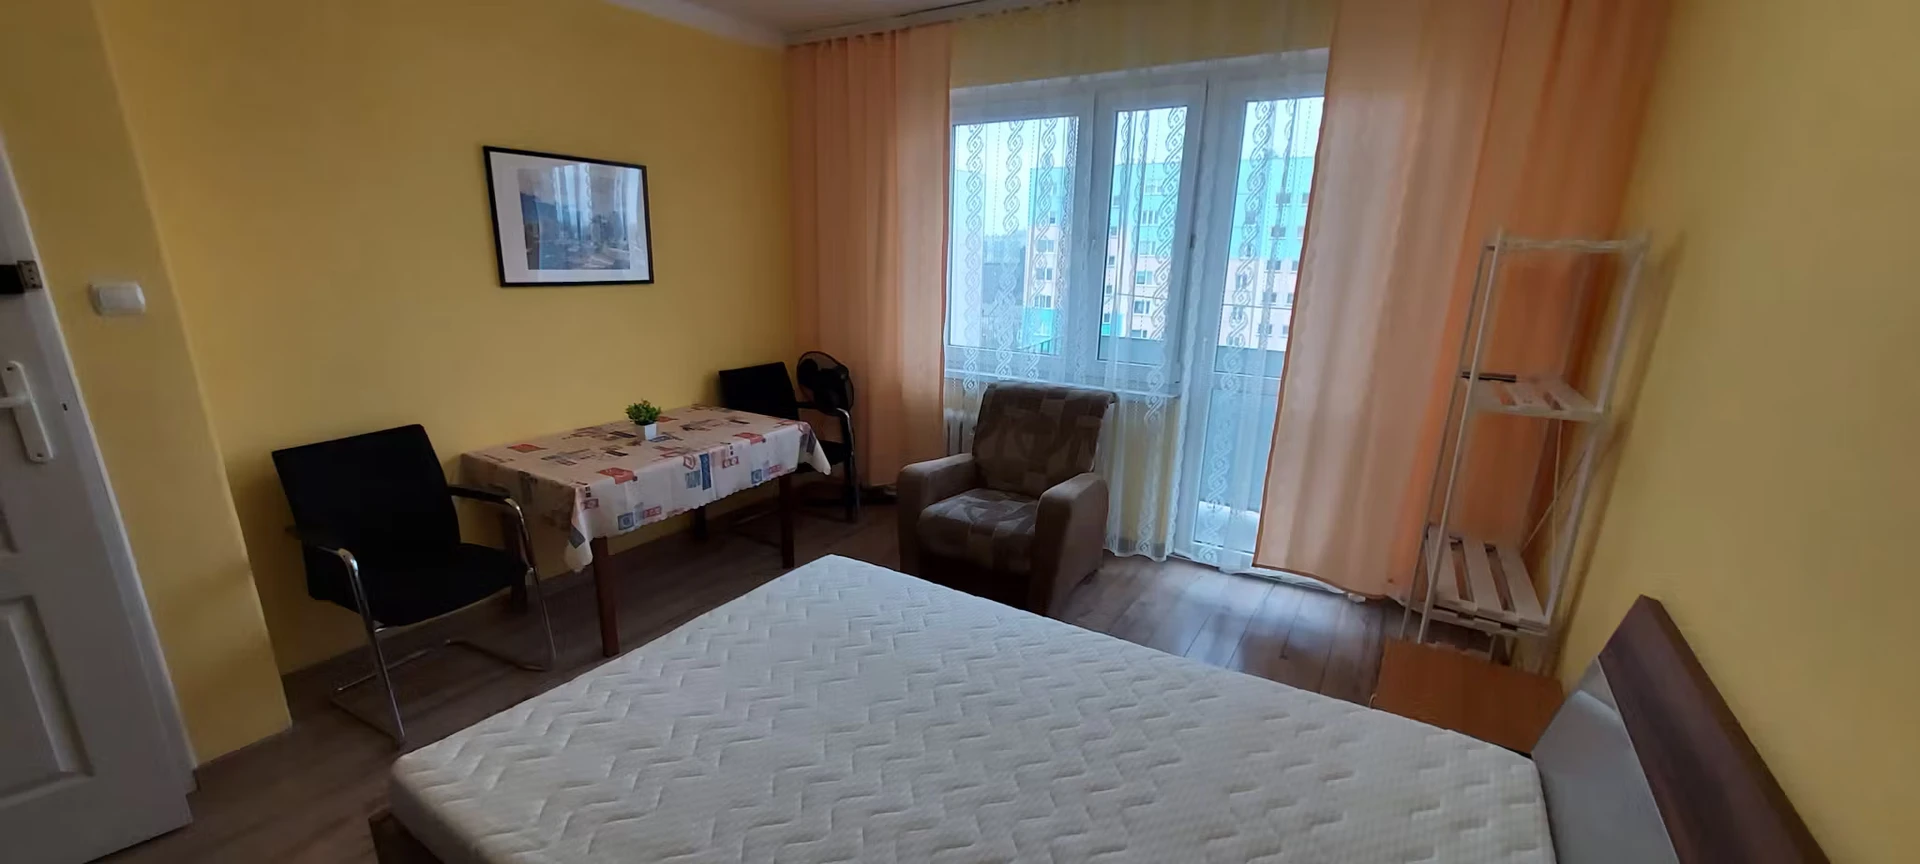 Habitación en alquiler con cama doble Rzeszów